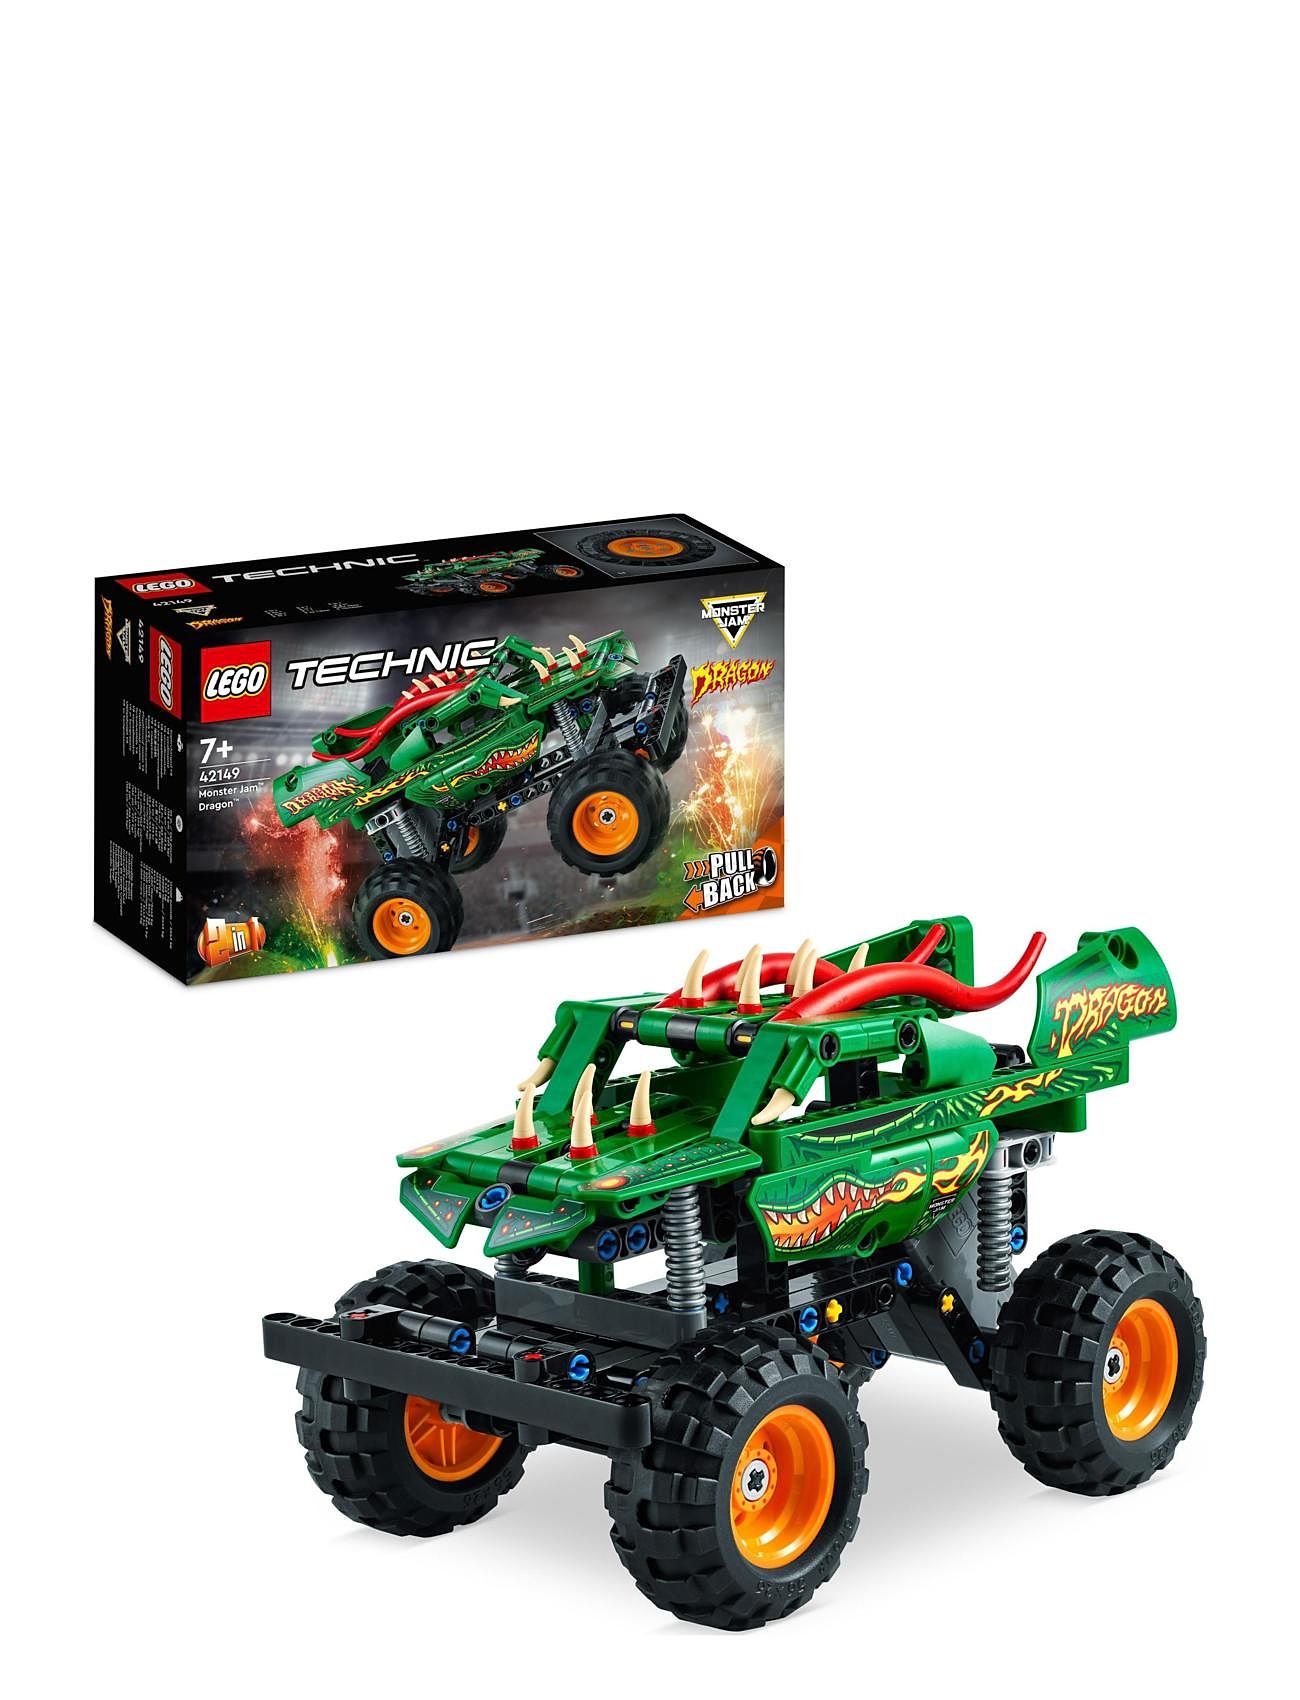 Monster Jam Dragon 2In1 Monster Truck Toy Toys Lego Toys Lego® Technic Multi/patterned LEGO